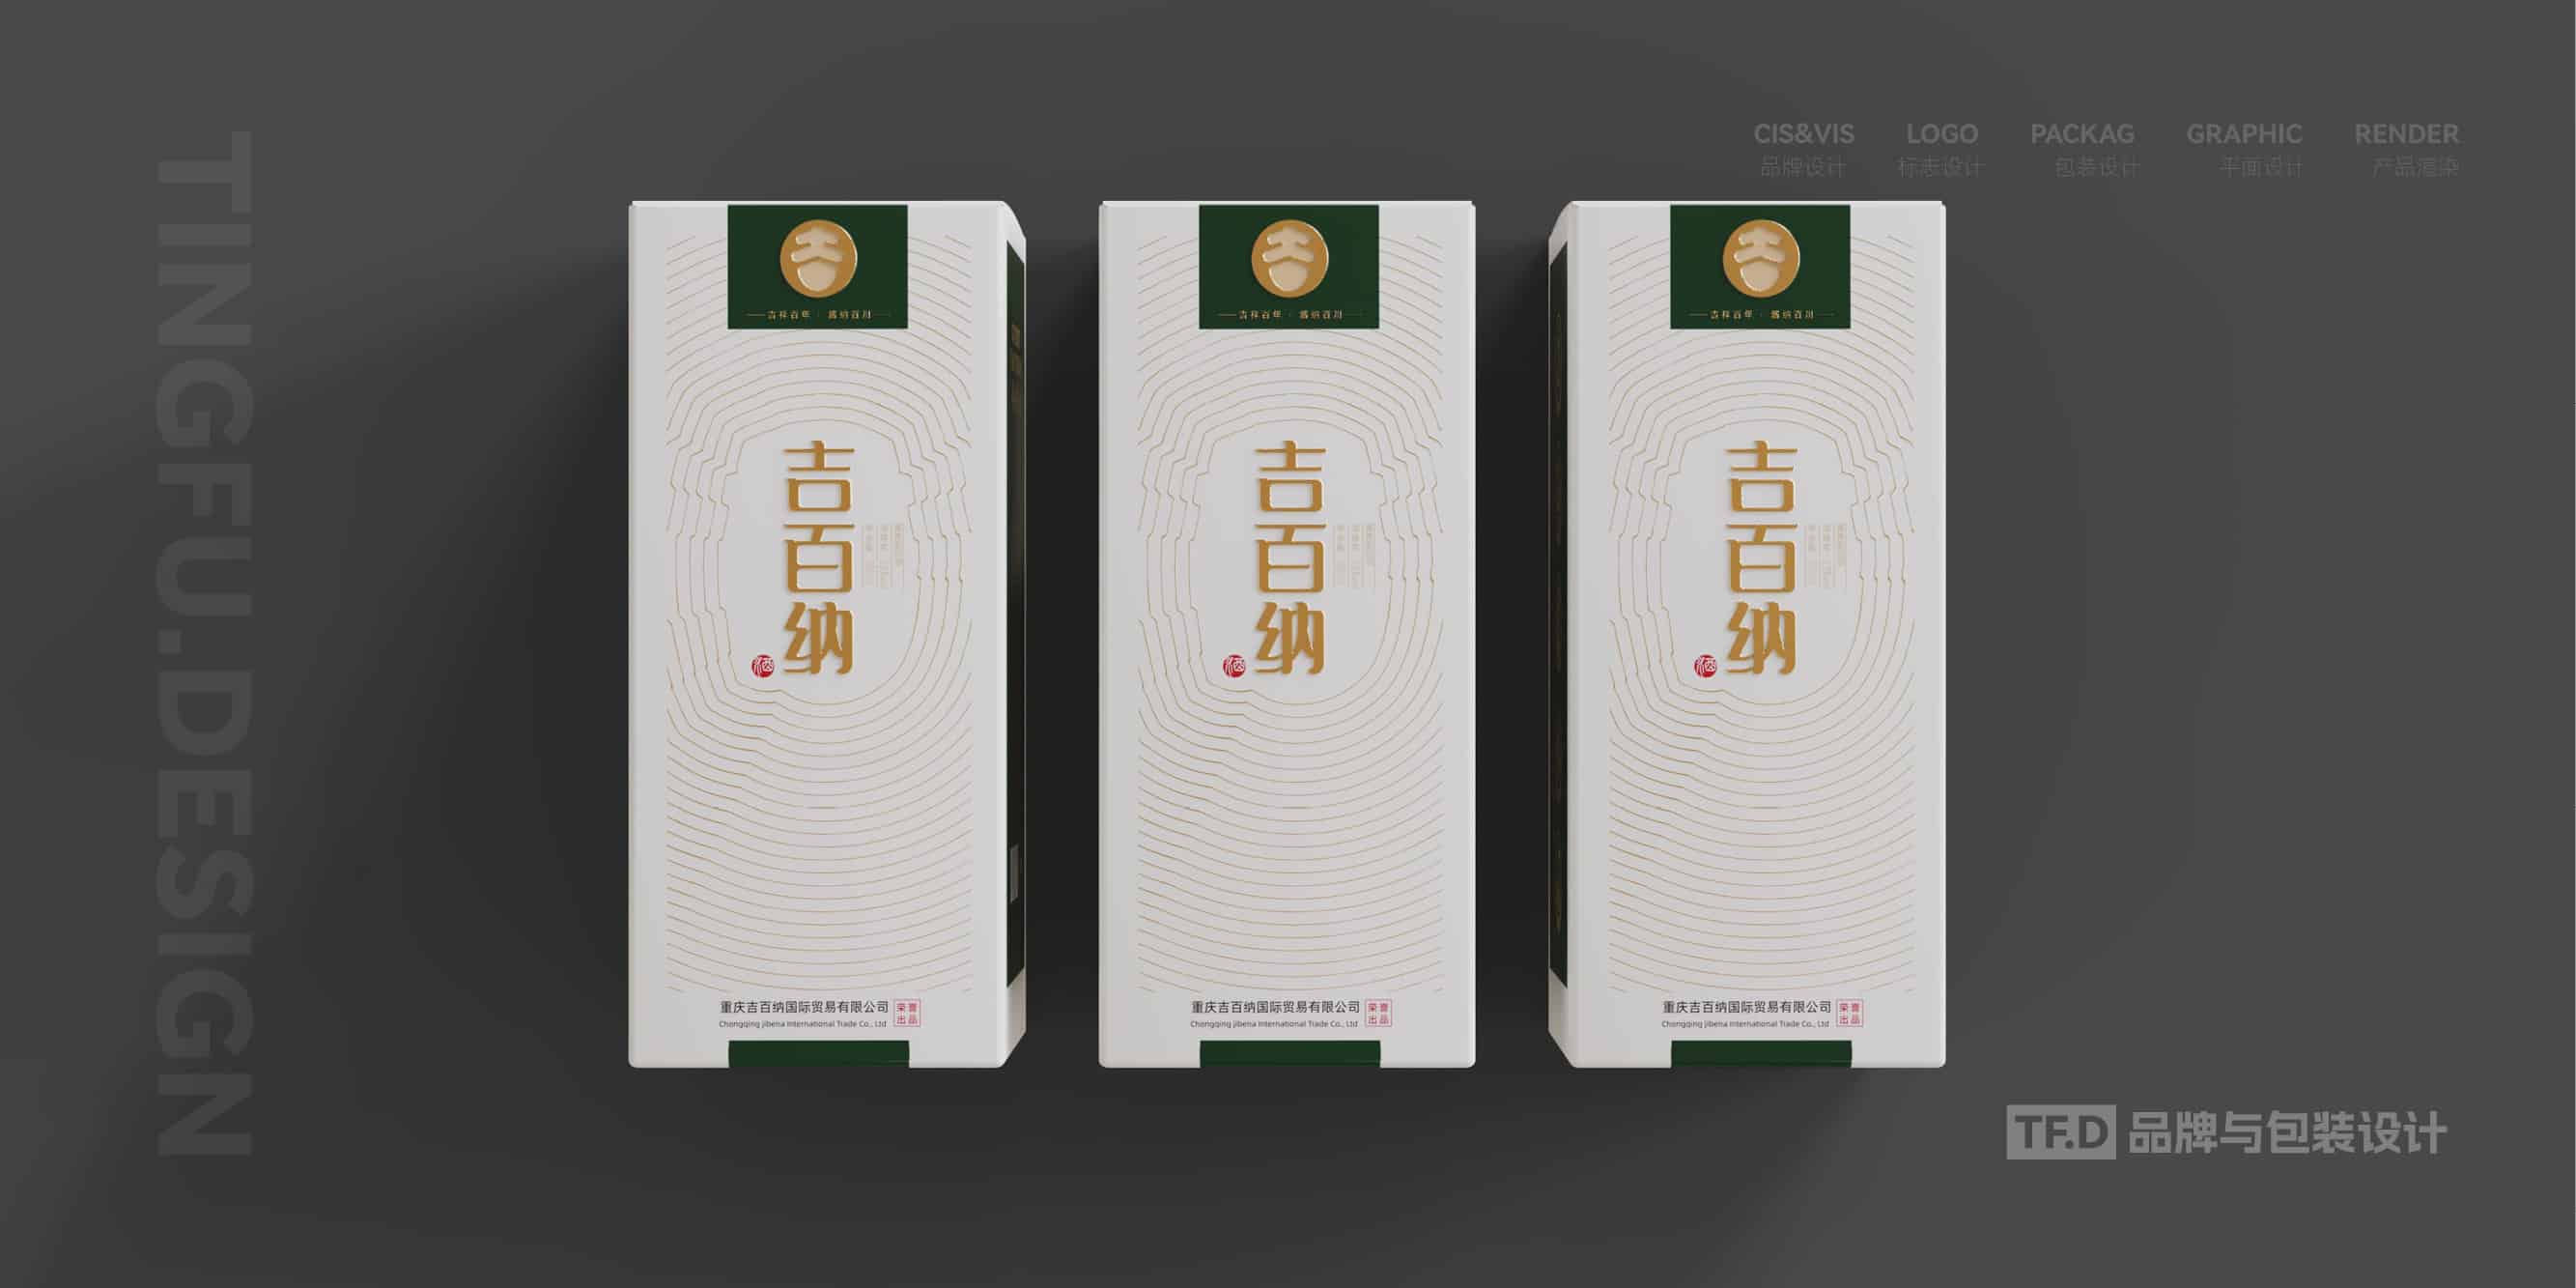 TFD品牌与包装设计-部分酒包装设计案例11-tuya.jpg